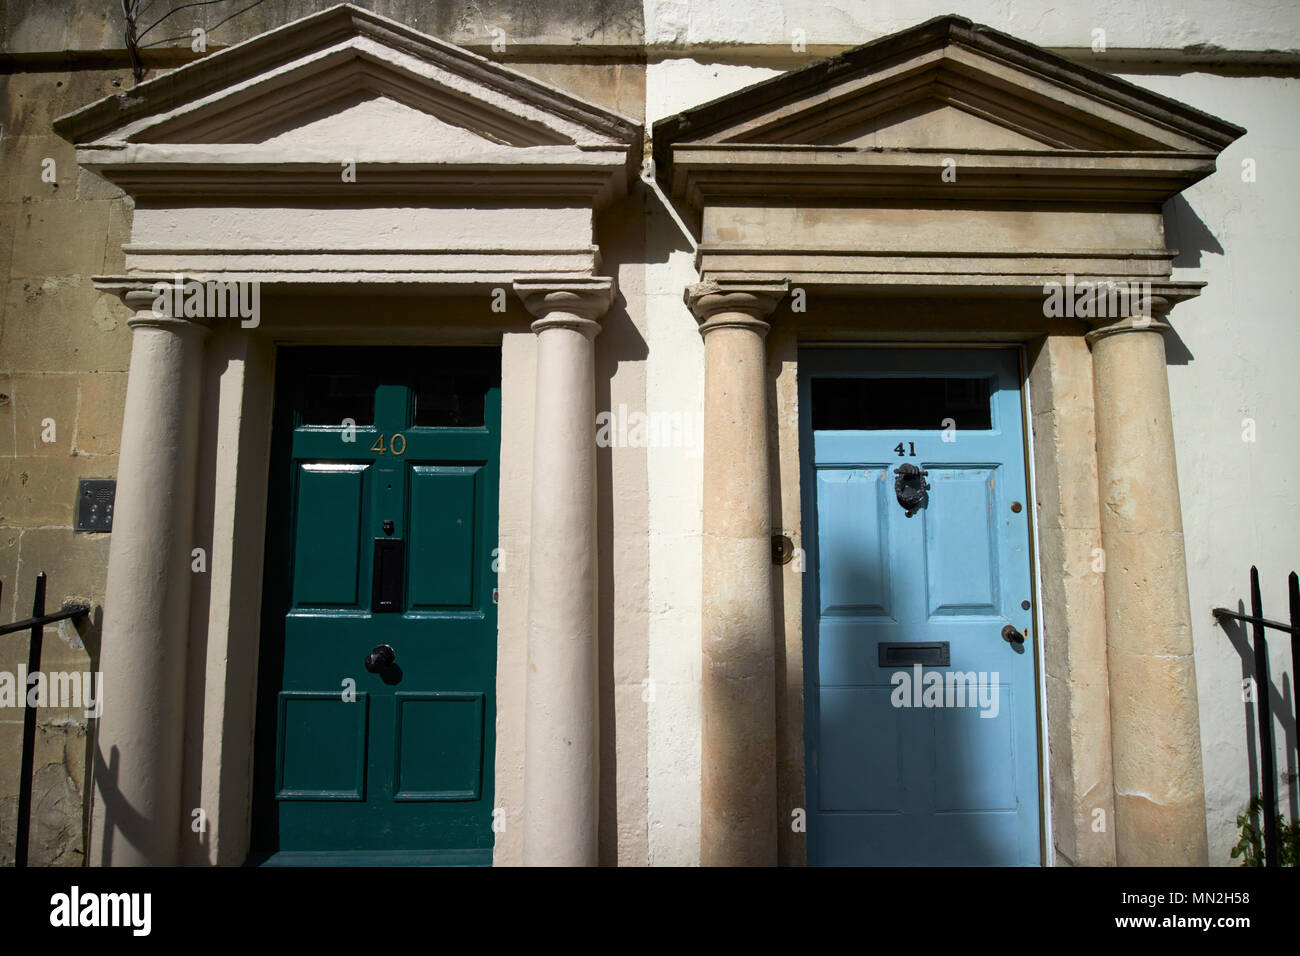 Holz- sechs Türen in Architrav mit Giebel auf Pilastern mit Konsolen Türen zu georgianische Stadthäuser Badewanne England Großbritannien Stockfoto